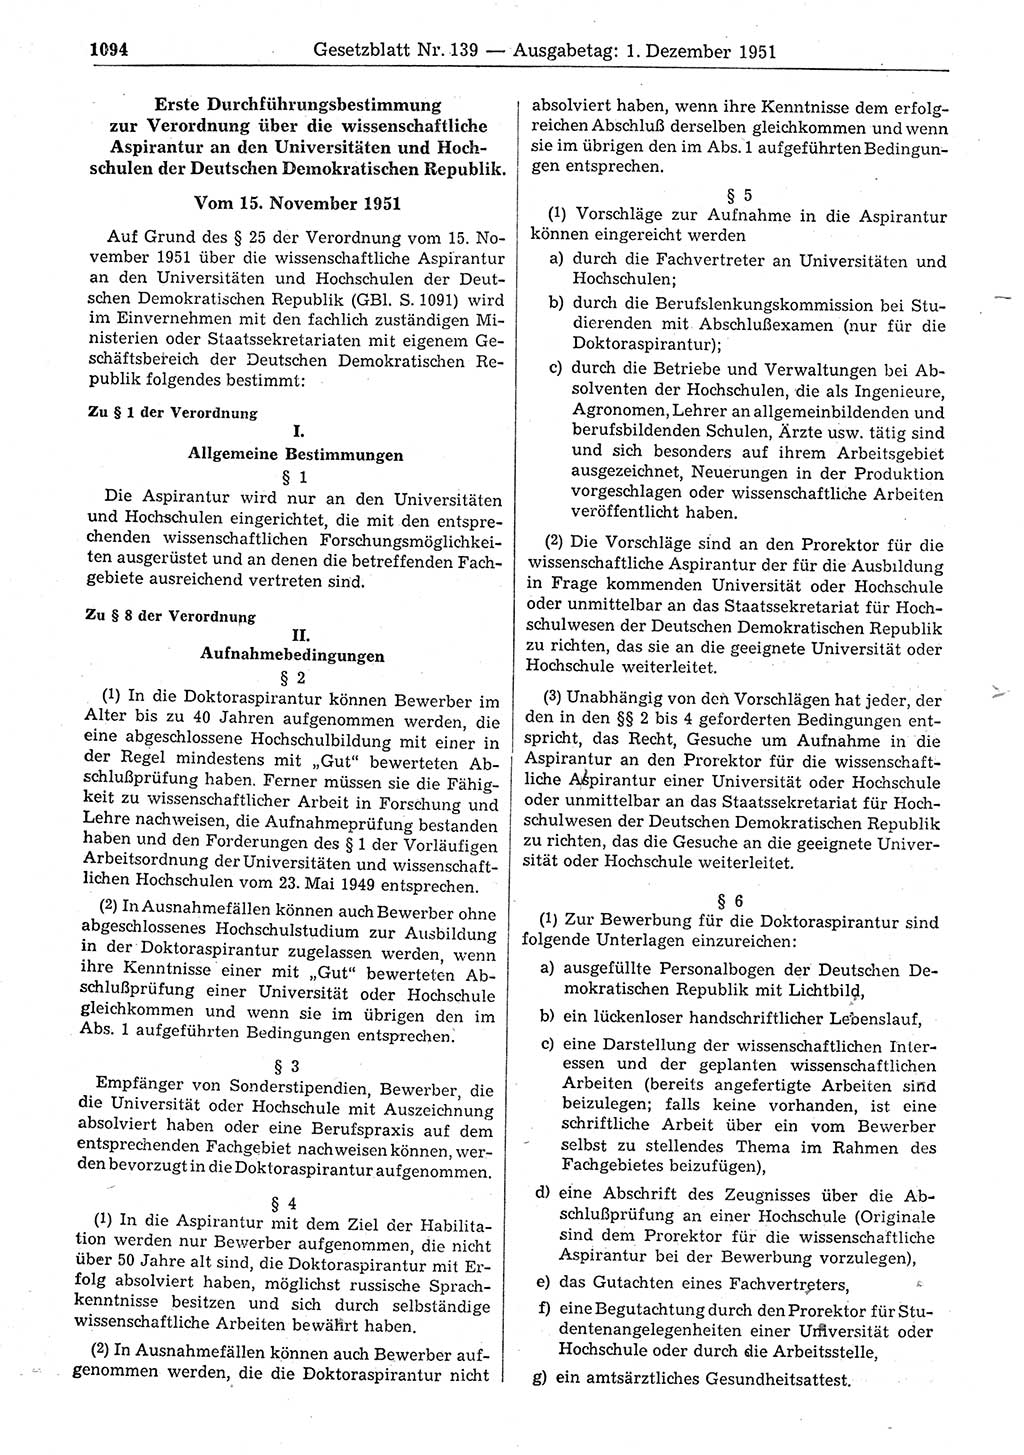 Gesetzblatt (GBl.) der Deutschen Demokratischen Republik (DDR) 1951, Seite 1094 (GBl. DDR 1951, S. 1094)